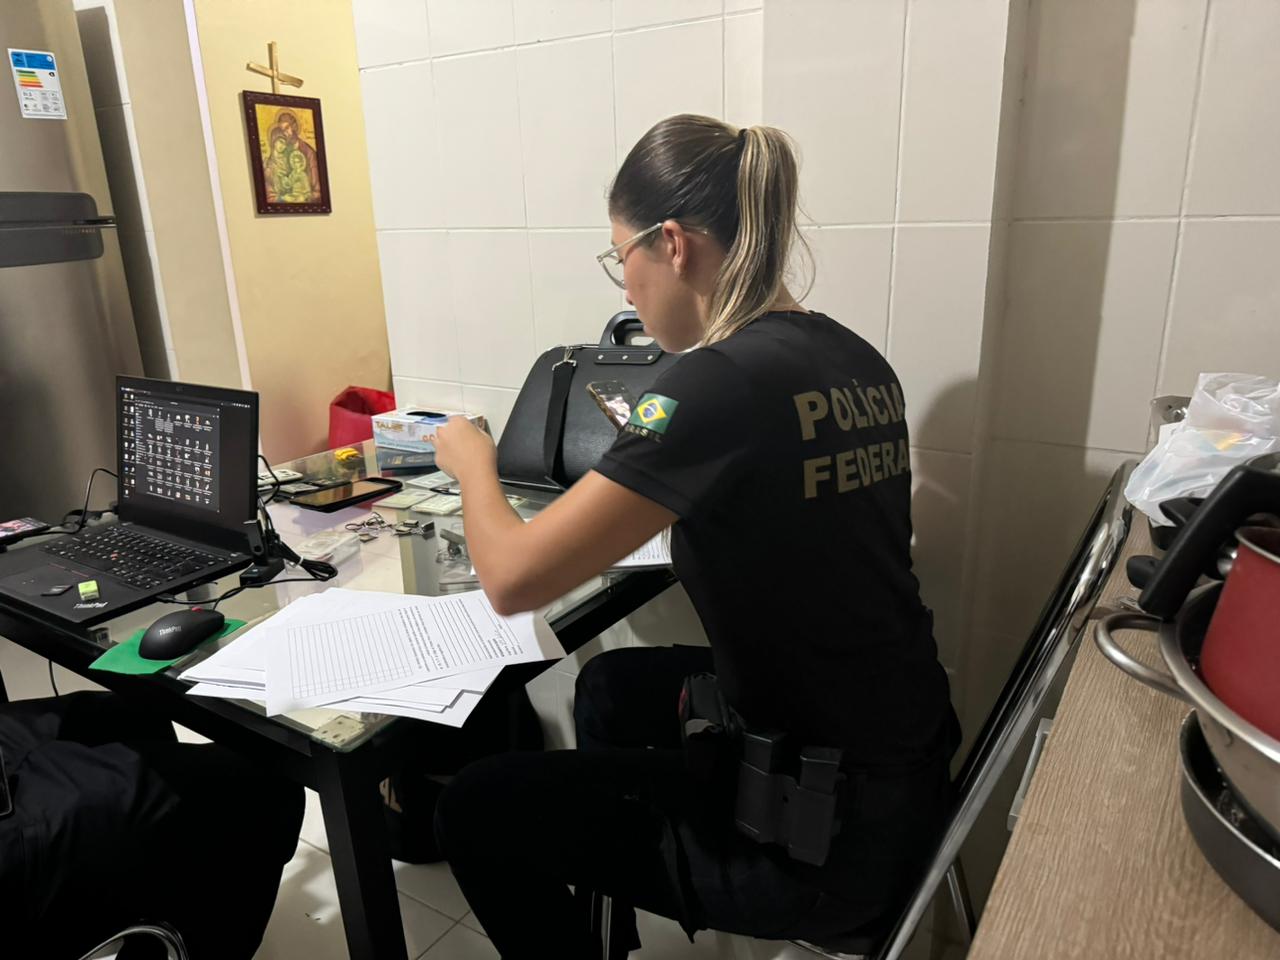 Polícia Federal prendeu o homem na Serra e fez apreensões na casa de um suspeito em Vila Velha, levando um notebook e um celular que serão periciados